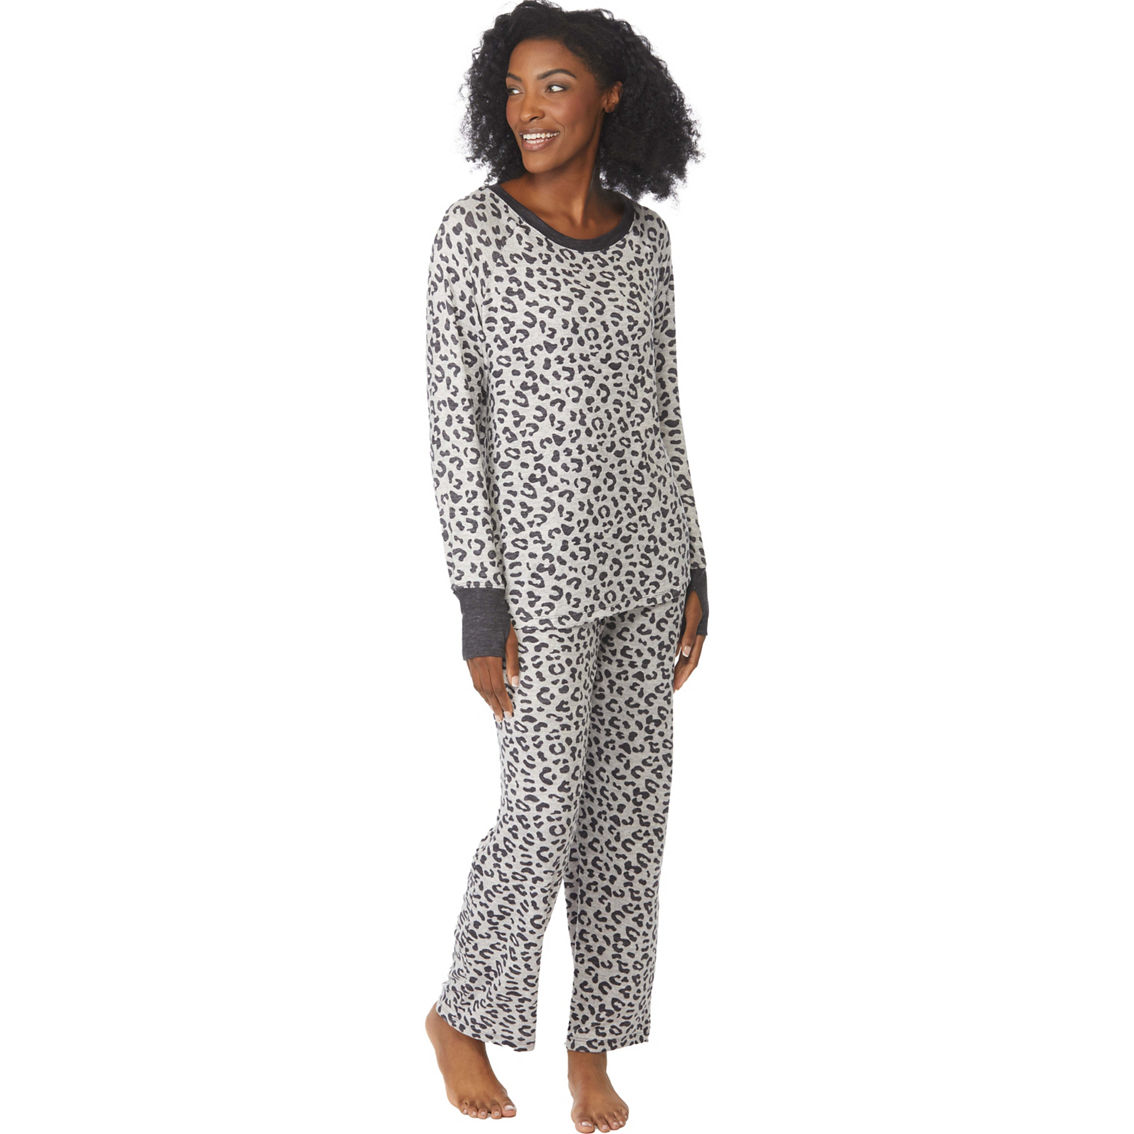 Rene Rofe Simple Lounging Pajamas 2 Pc. Set | Pajamas & Robes ...